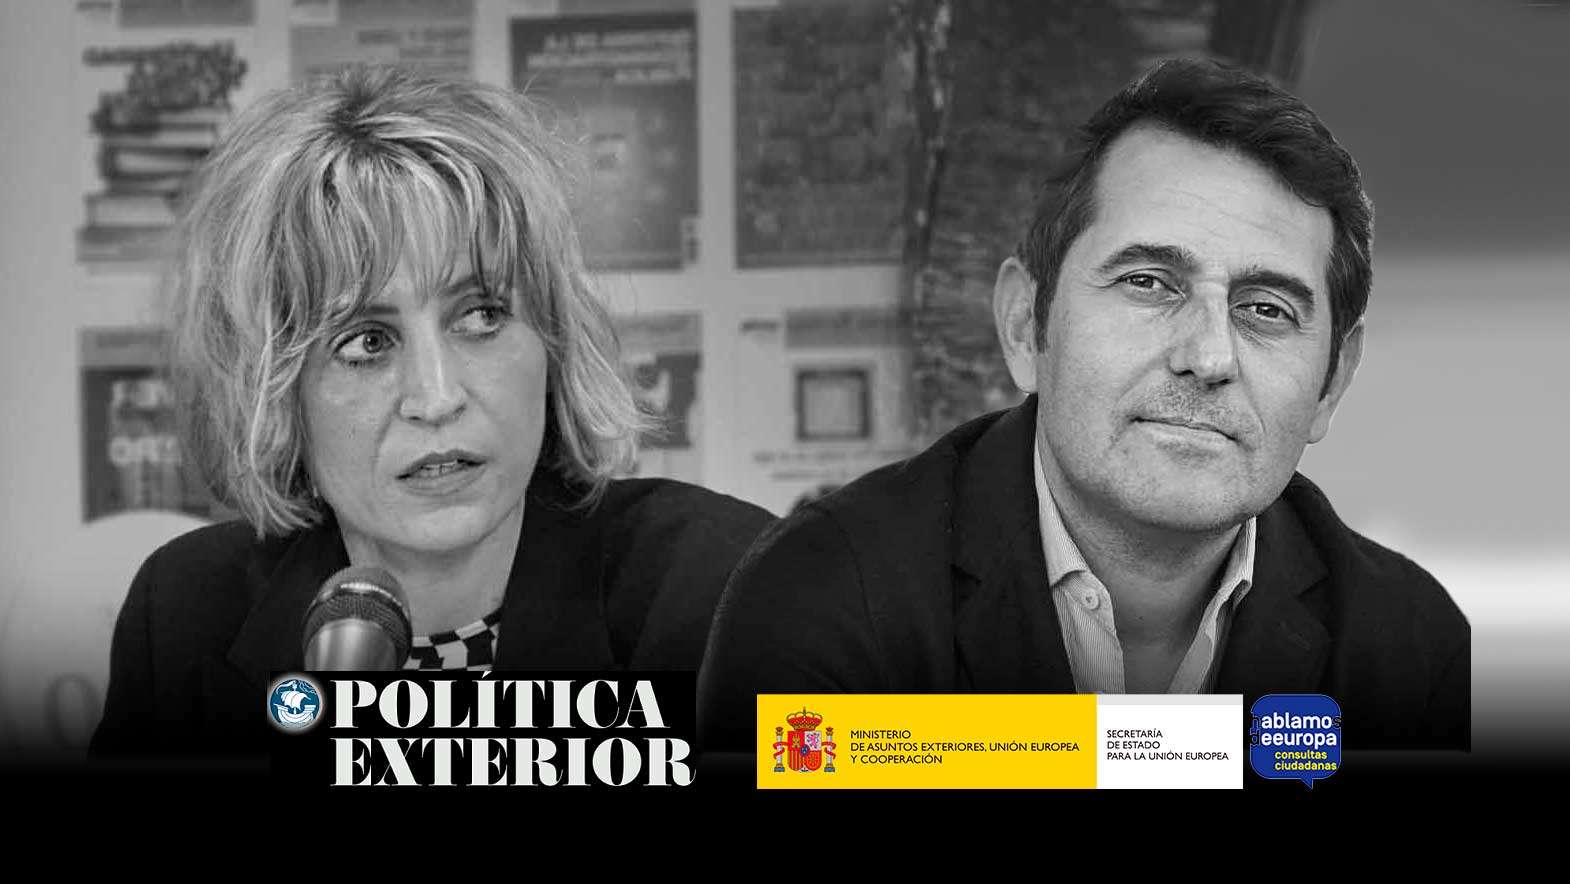 Pensar en Europa desde el Sur. Con Manuel Arias Maldonado y Máriam Martínez-Bascuñán